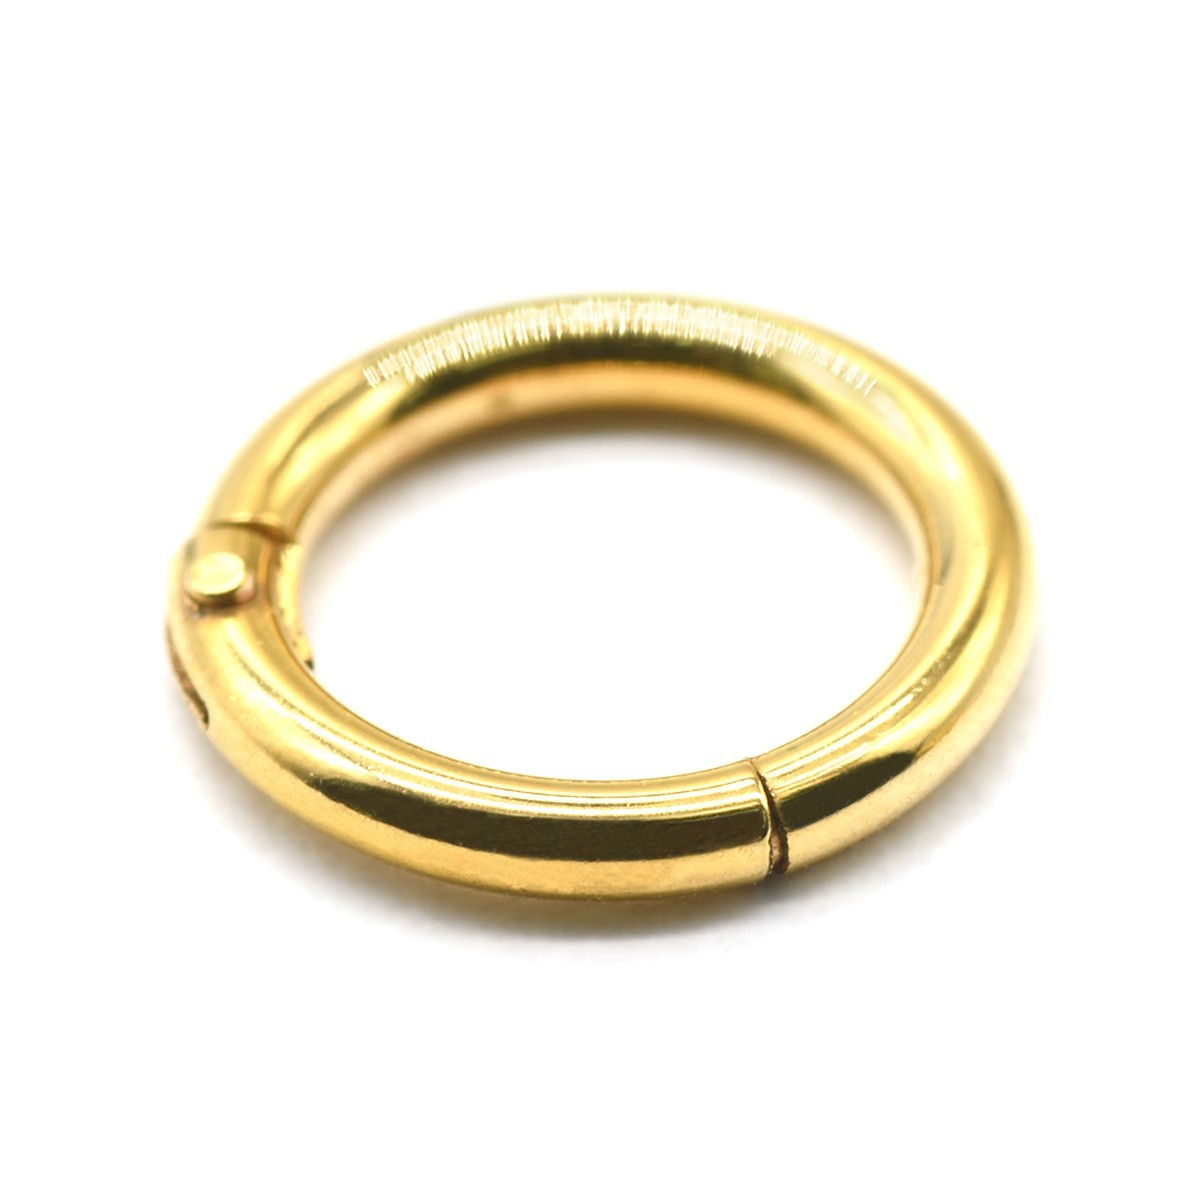 [ продажа по отдельности /1 шт ] пирсинги хирургический нержавеющая сталь легко оборудован возможно одним движением тип seg men to кольцо 16 мера внутренний диаметр 6.0mm золотой цвет 